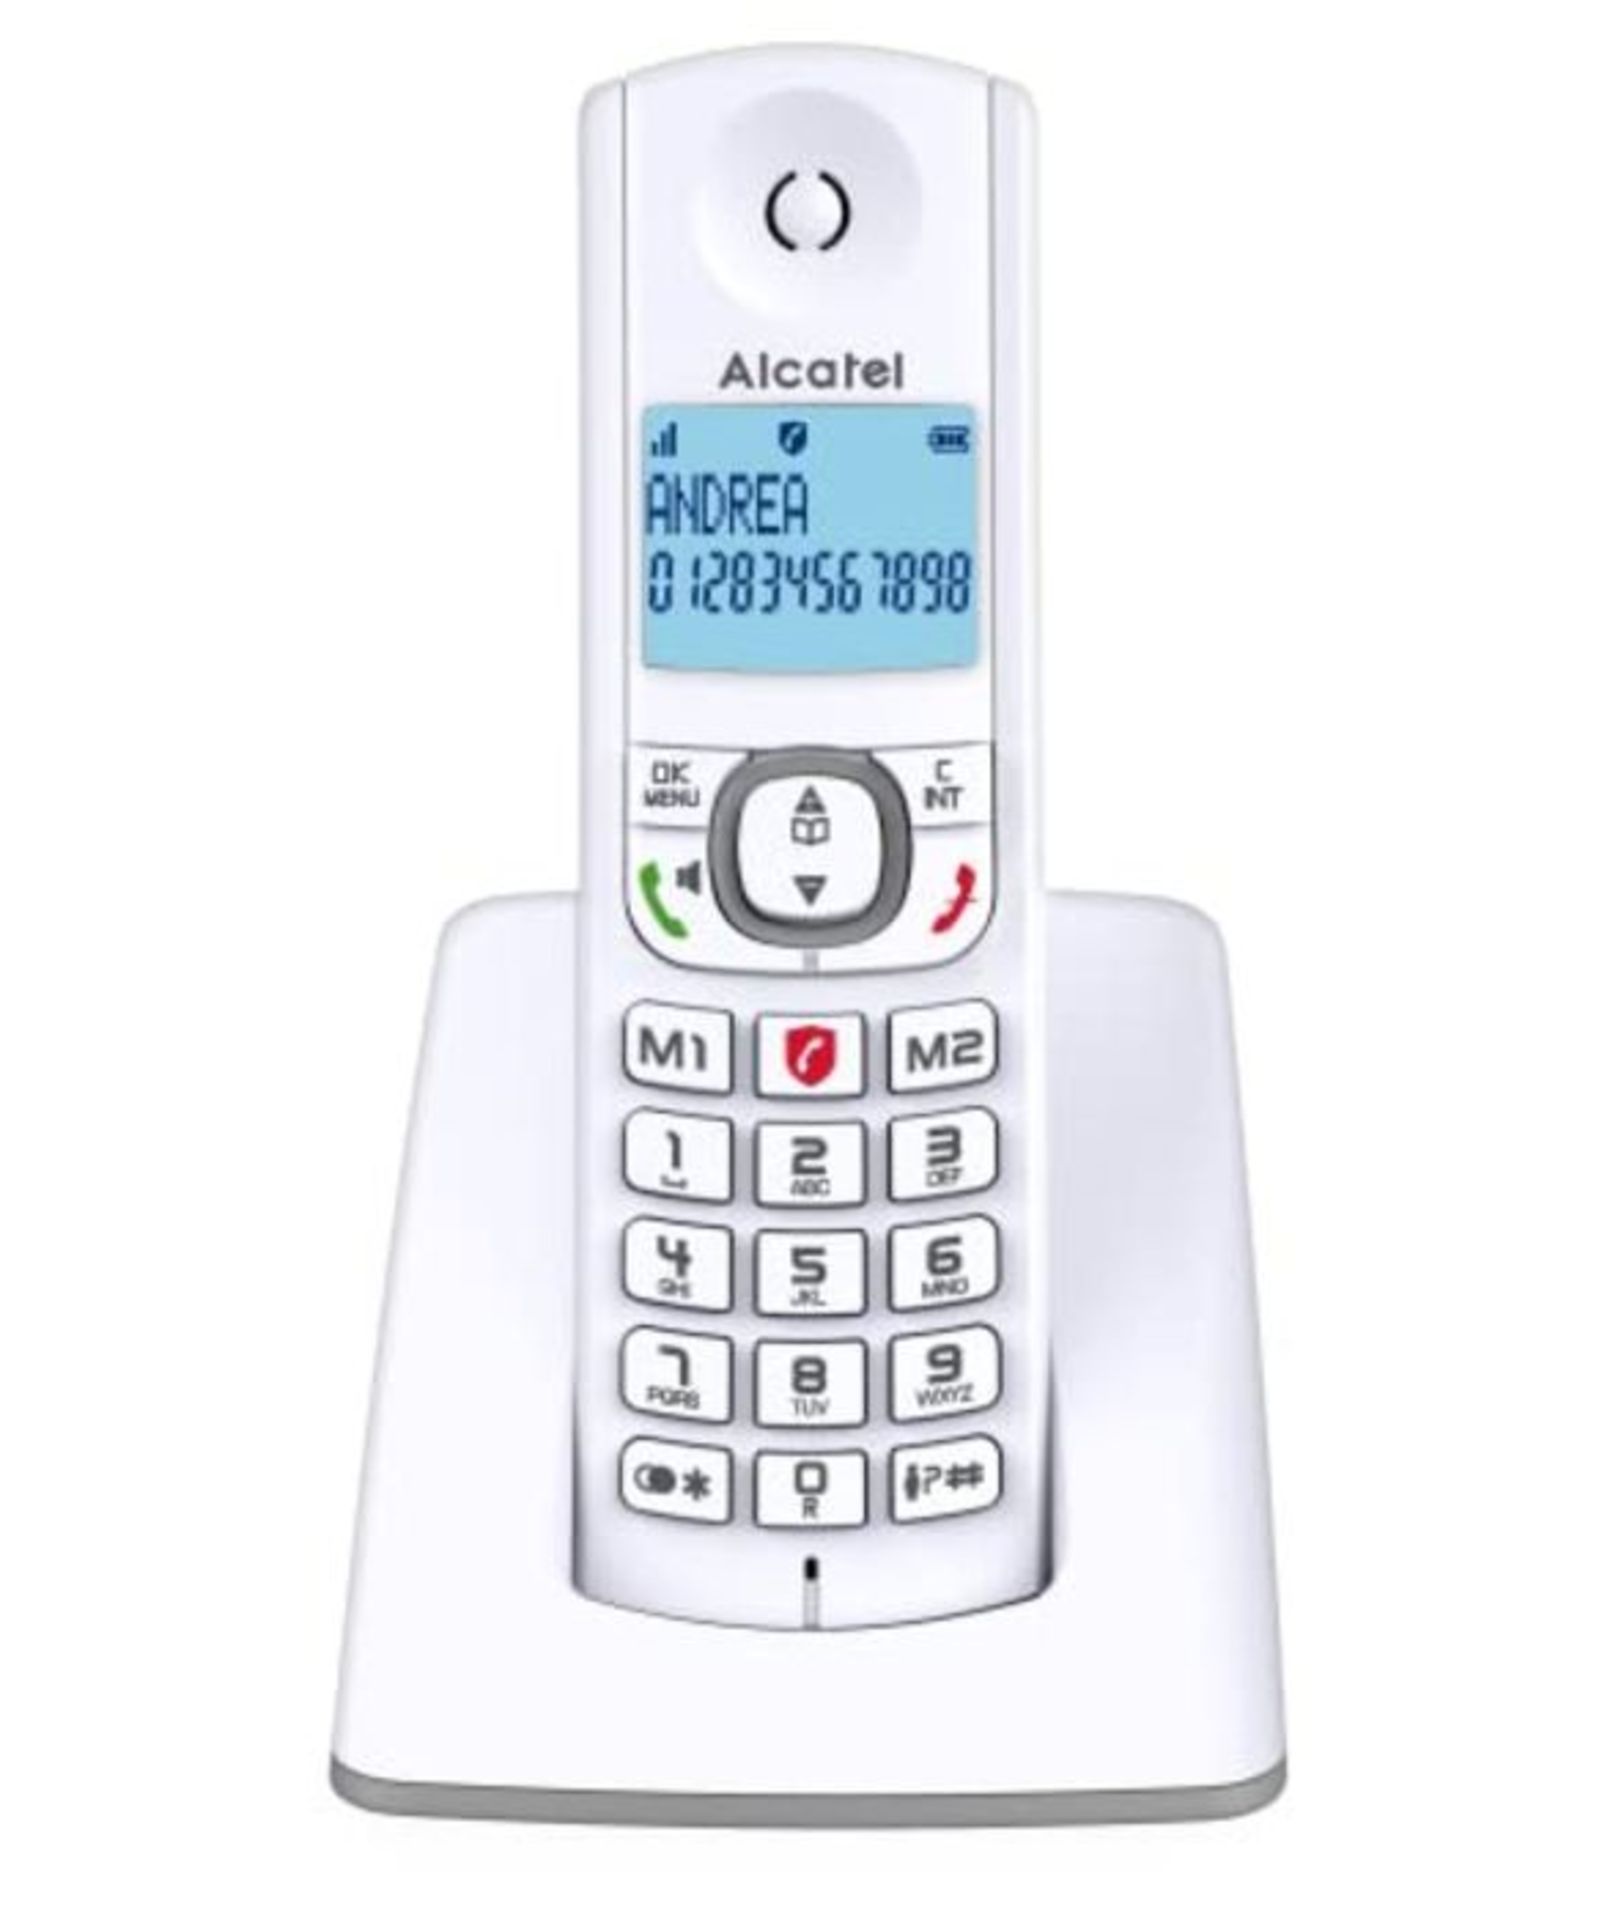 Alcatel F530 Telefono DECT Identificatore di chiamata Grigio, Bianco - Image 3 of 4